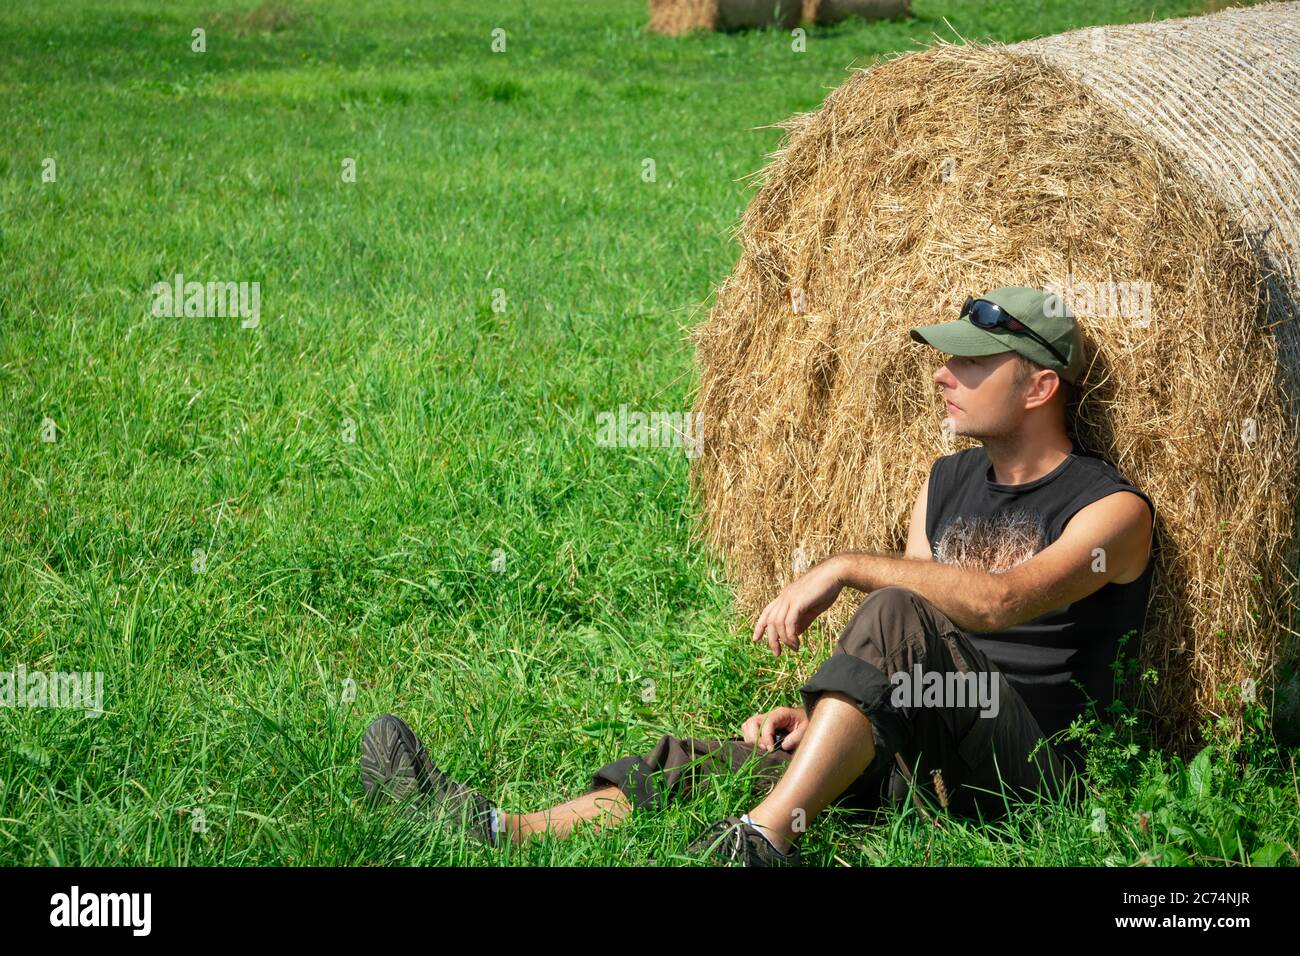 Sitzender Mann auf der grünen Wiese, basierend auf einem Heuballen, Sommer sonnigen Tag Stockfoto